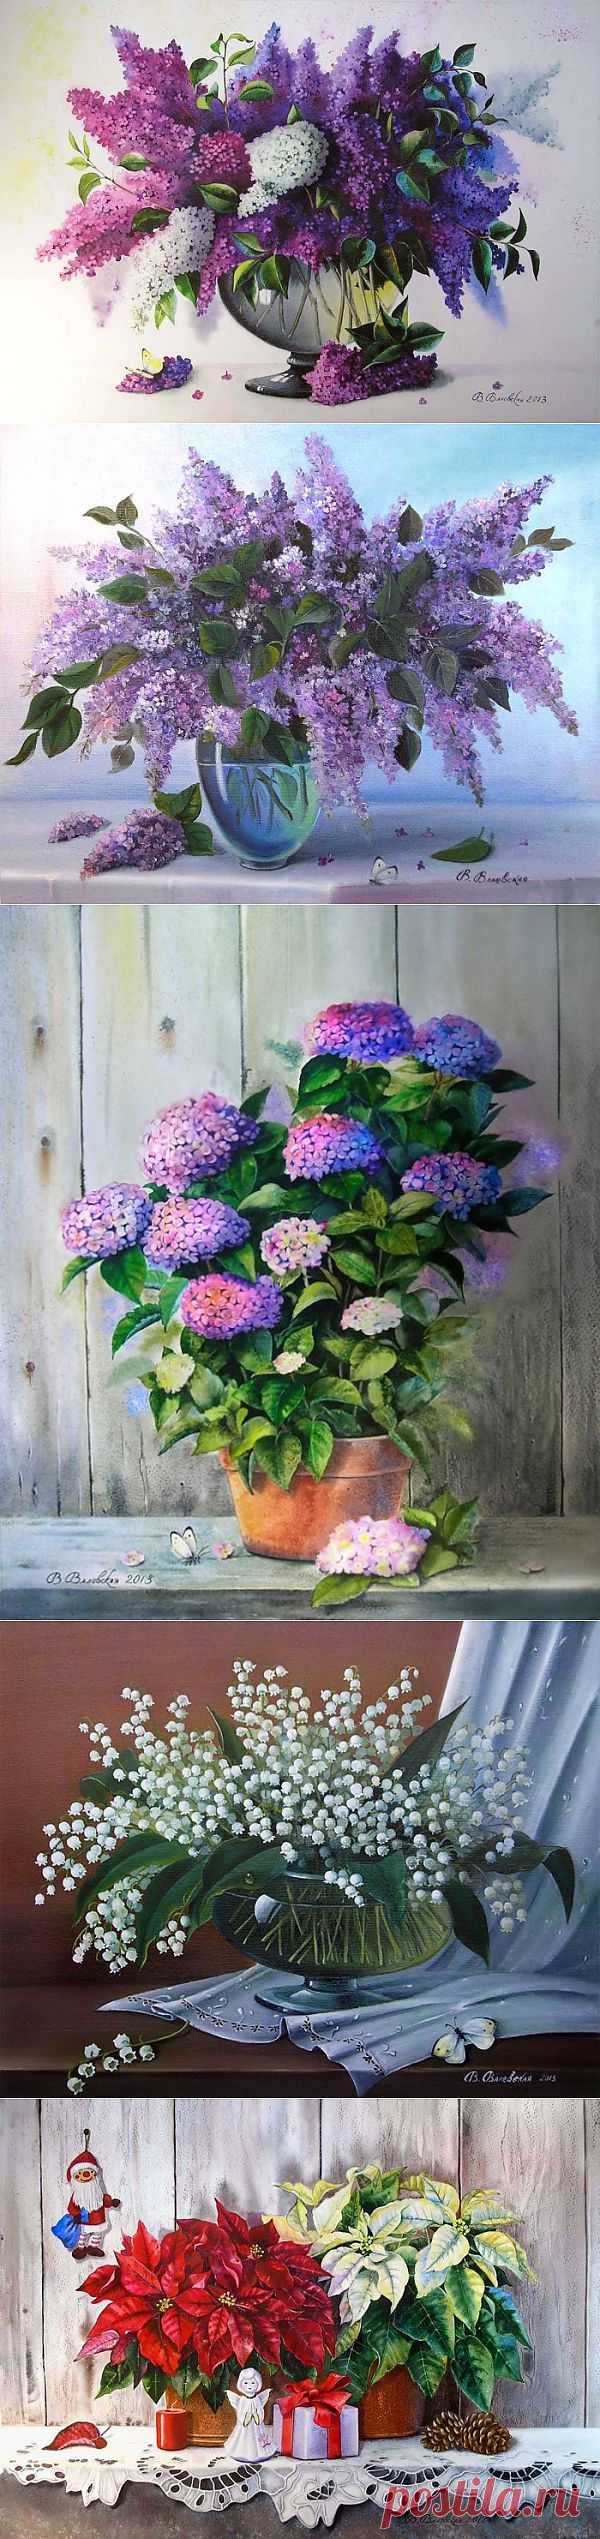 (+1) - Великолепные букеты цветов от украинской художницы Валентины Валевской | Искусство